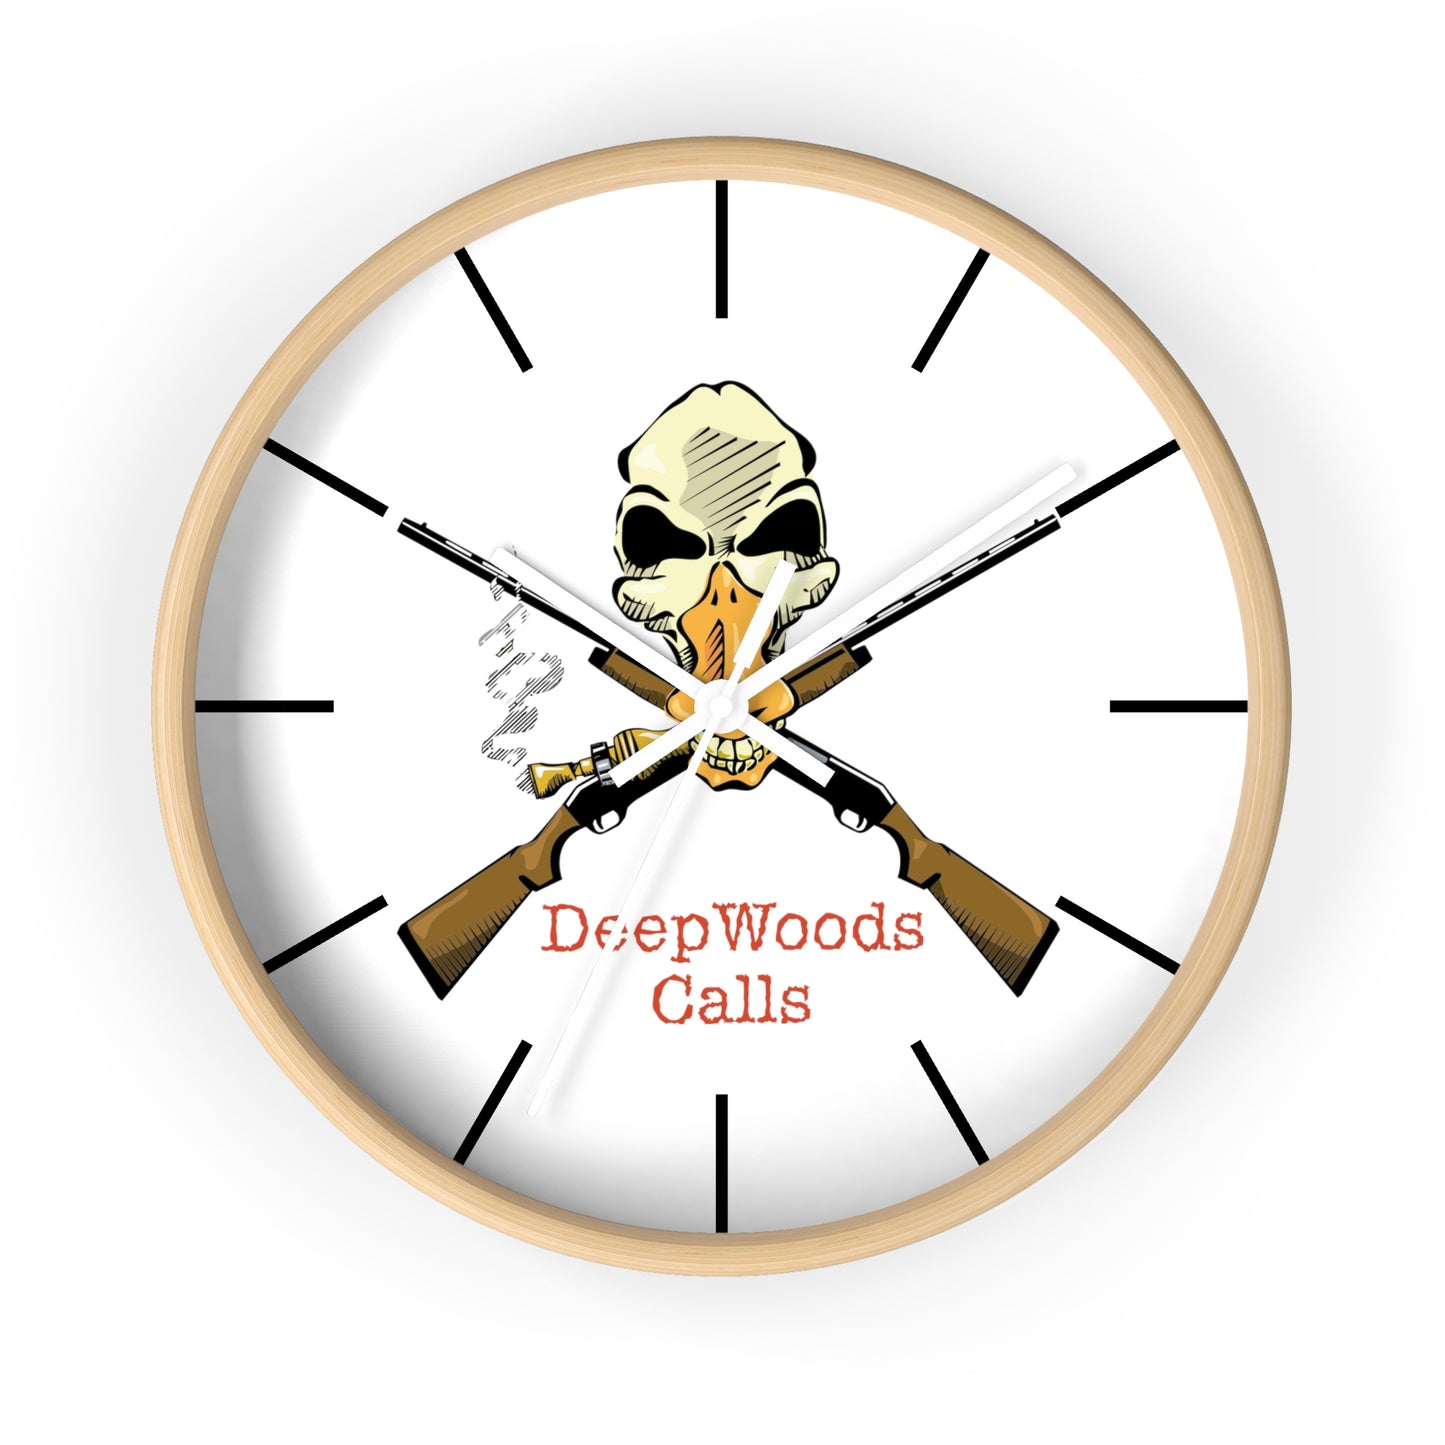 Deepwoods Calls Wall Clock